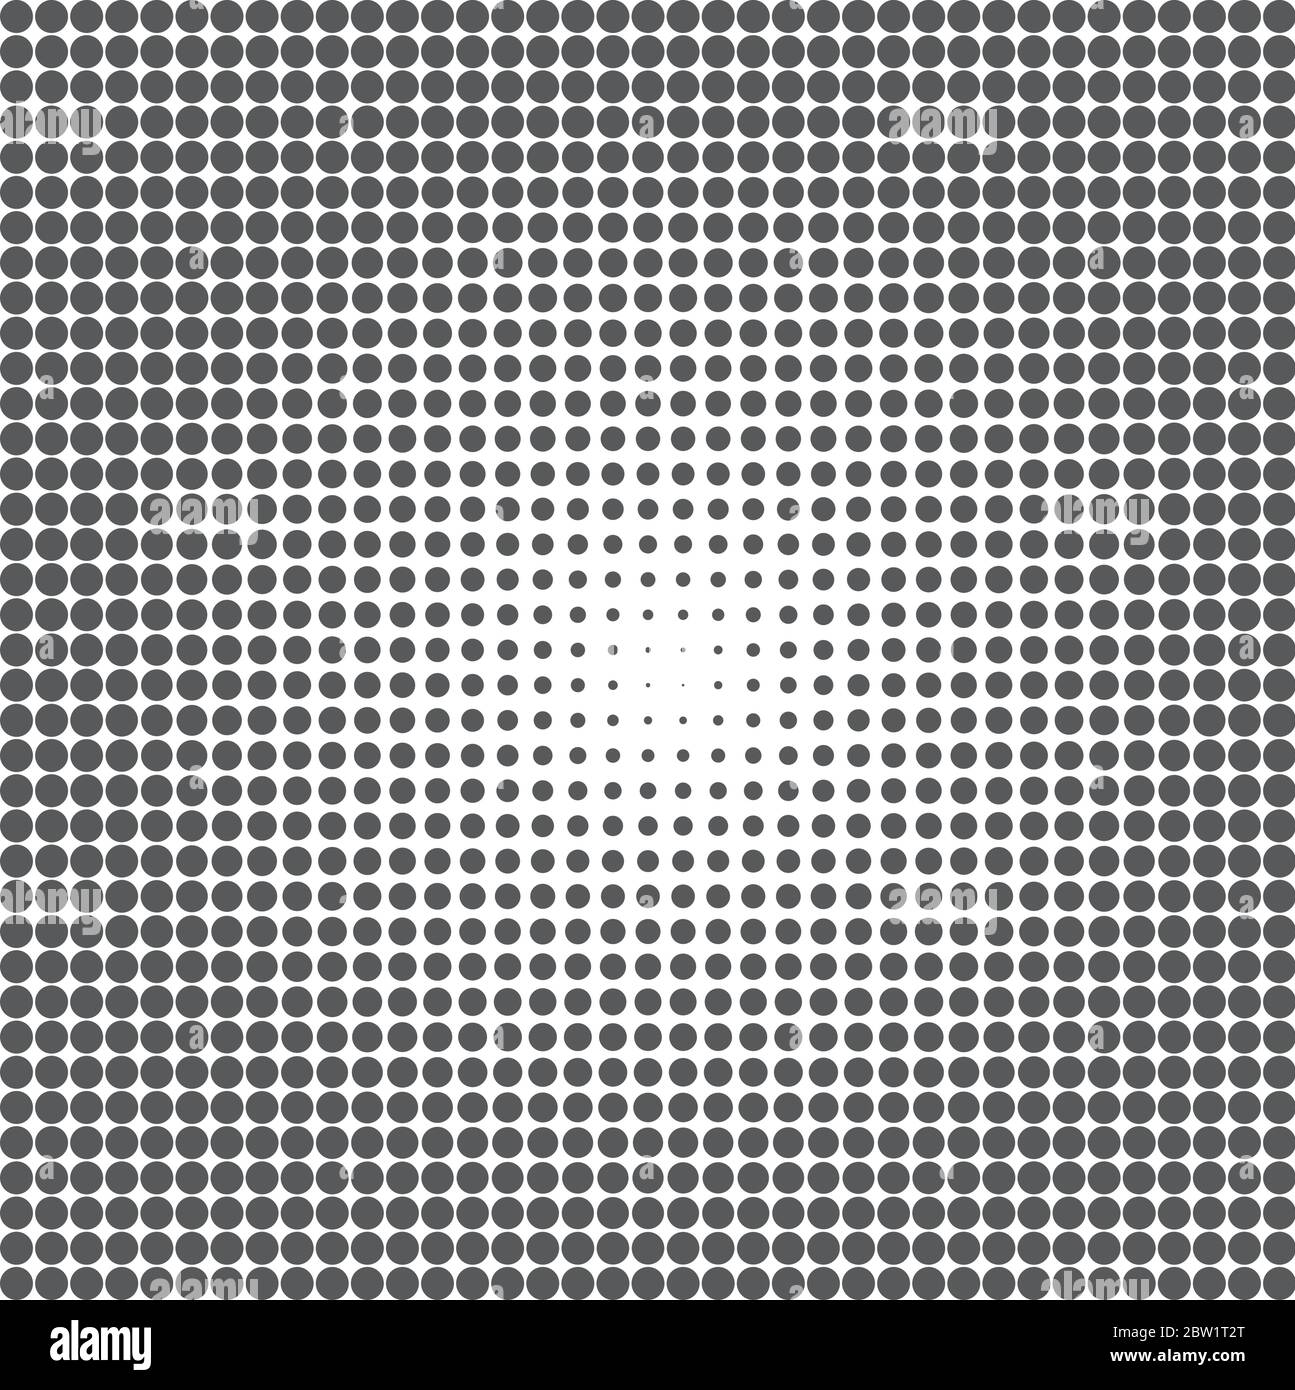 Schwarze Punkte auf weißer Oberfläche Stock Vektor